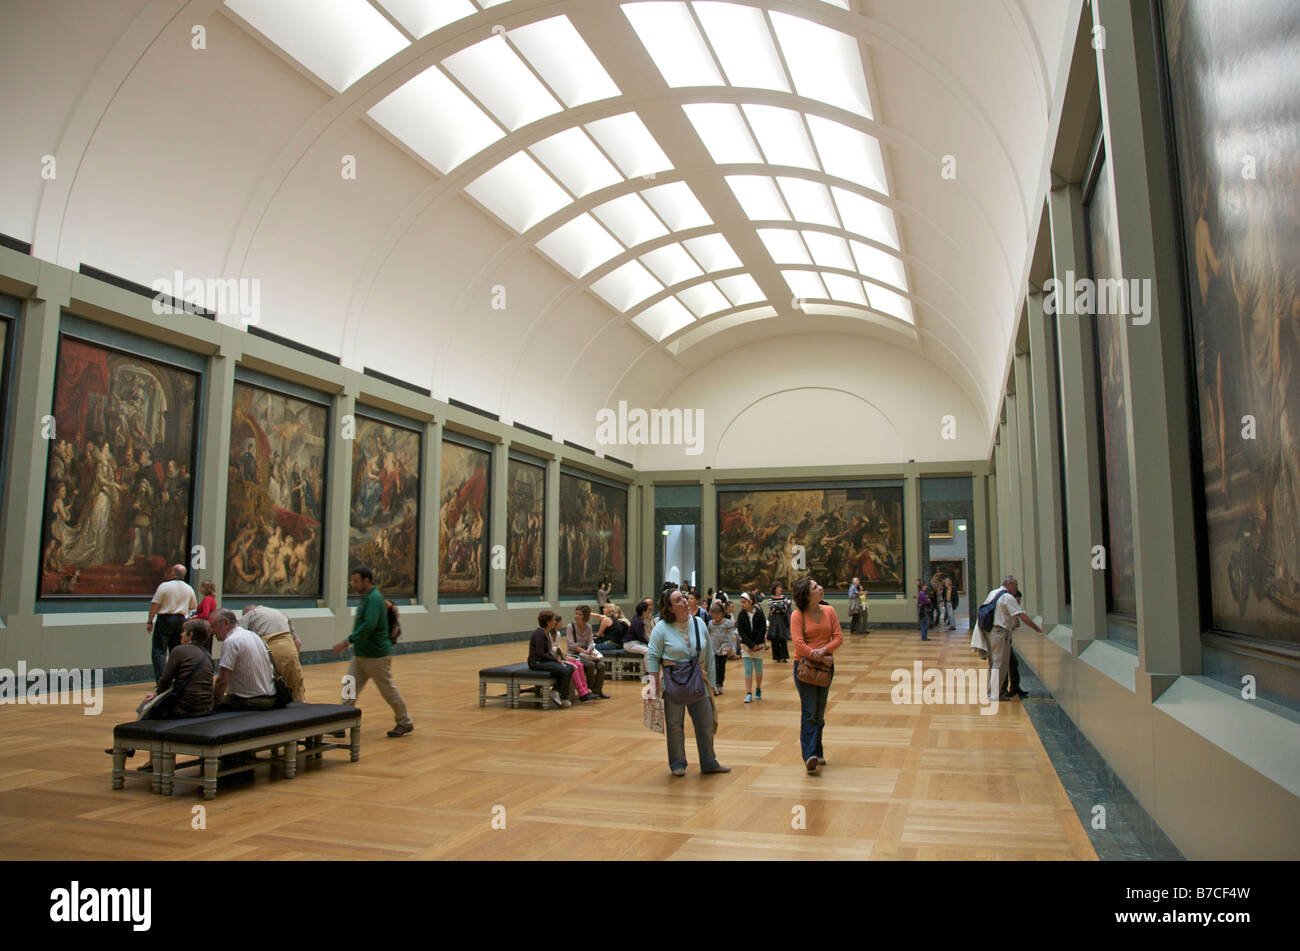 Galerie d'art du Louvre, de l'intérieur, Paris, France Banque D'Images